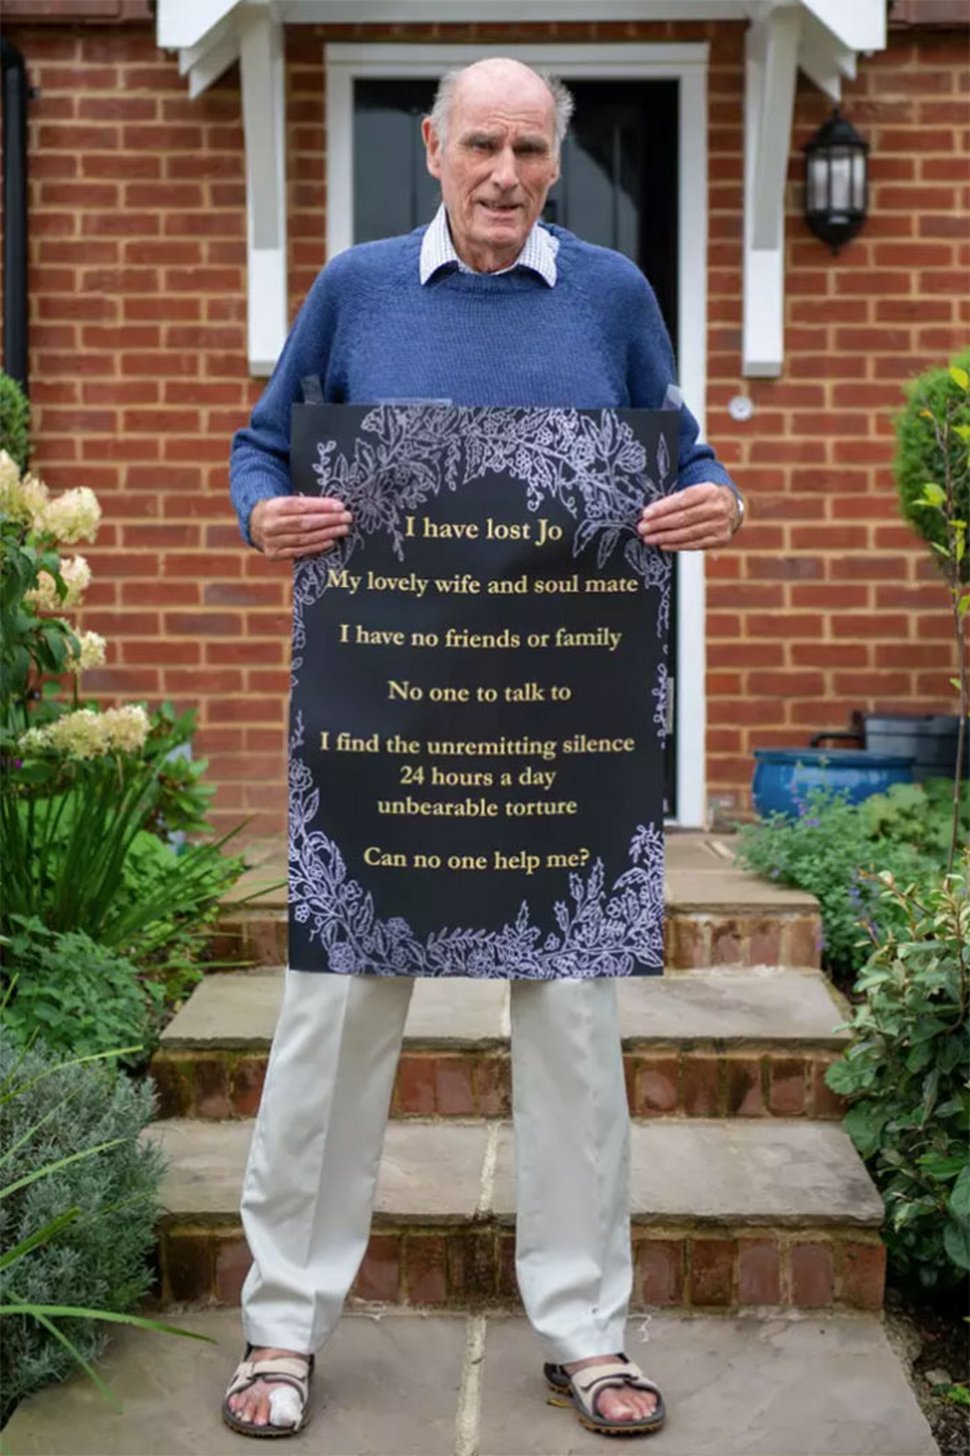 Cet homme de 75 ans a posé une affiche sur sa fenêtre pour tenter de se faire des amis après le décès de sa femme